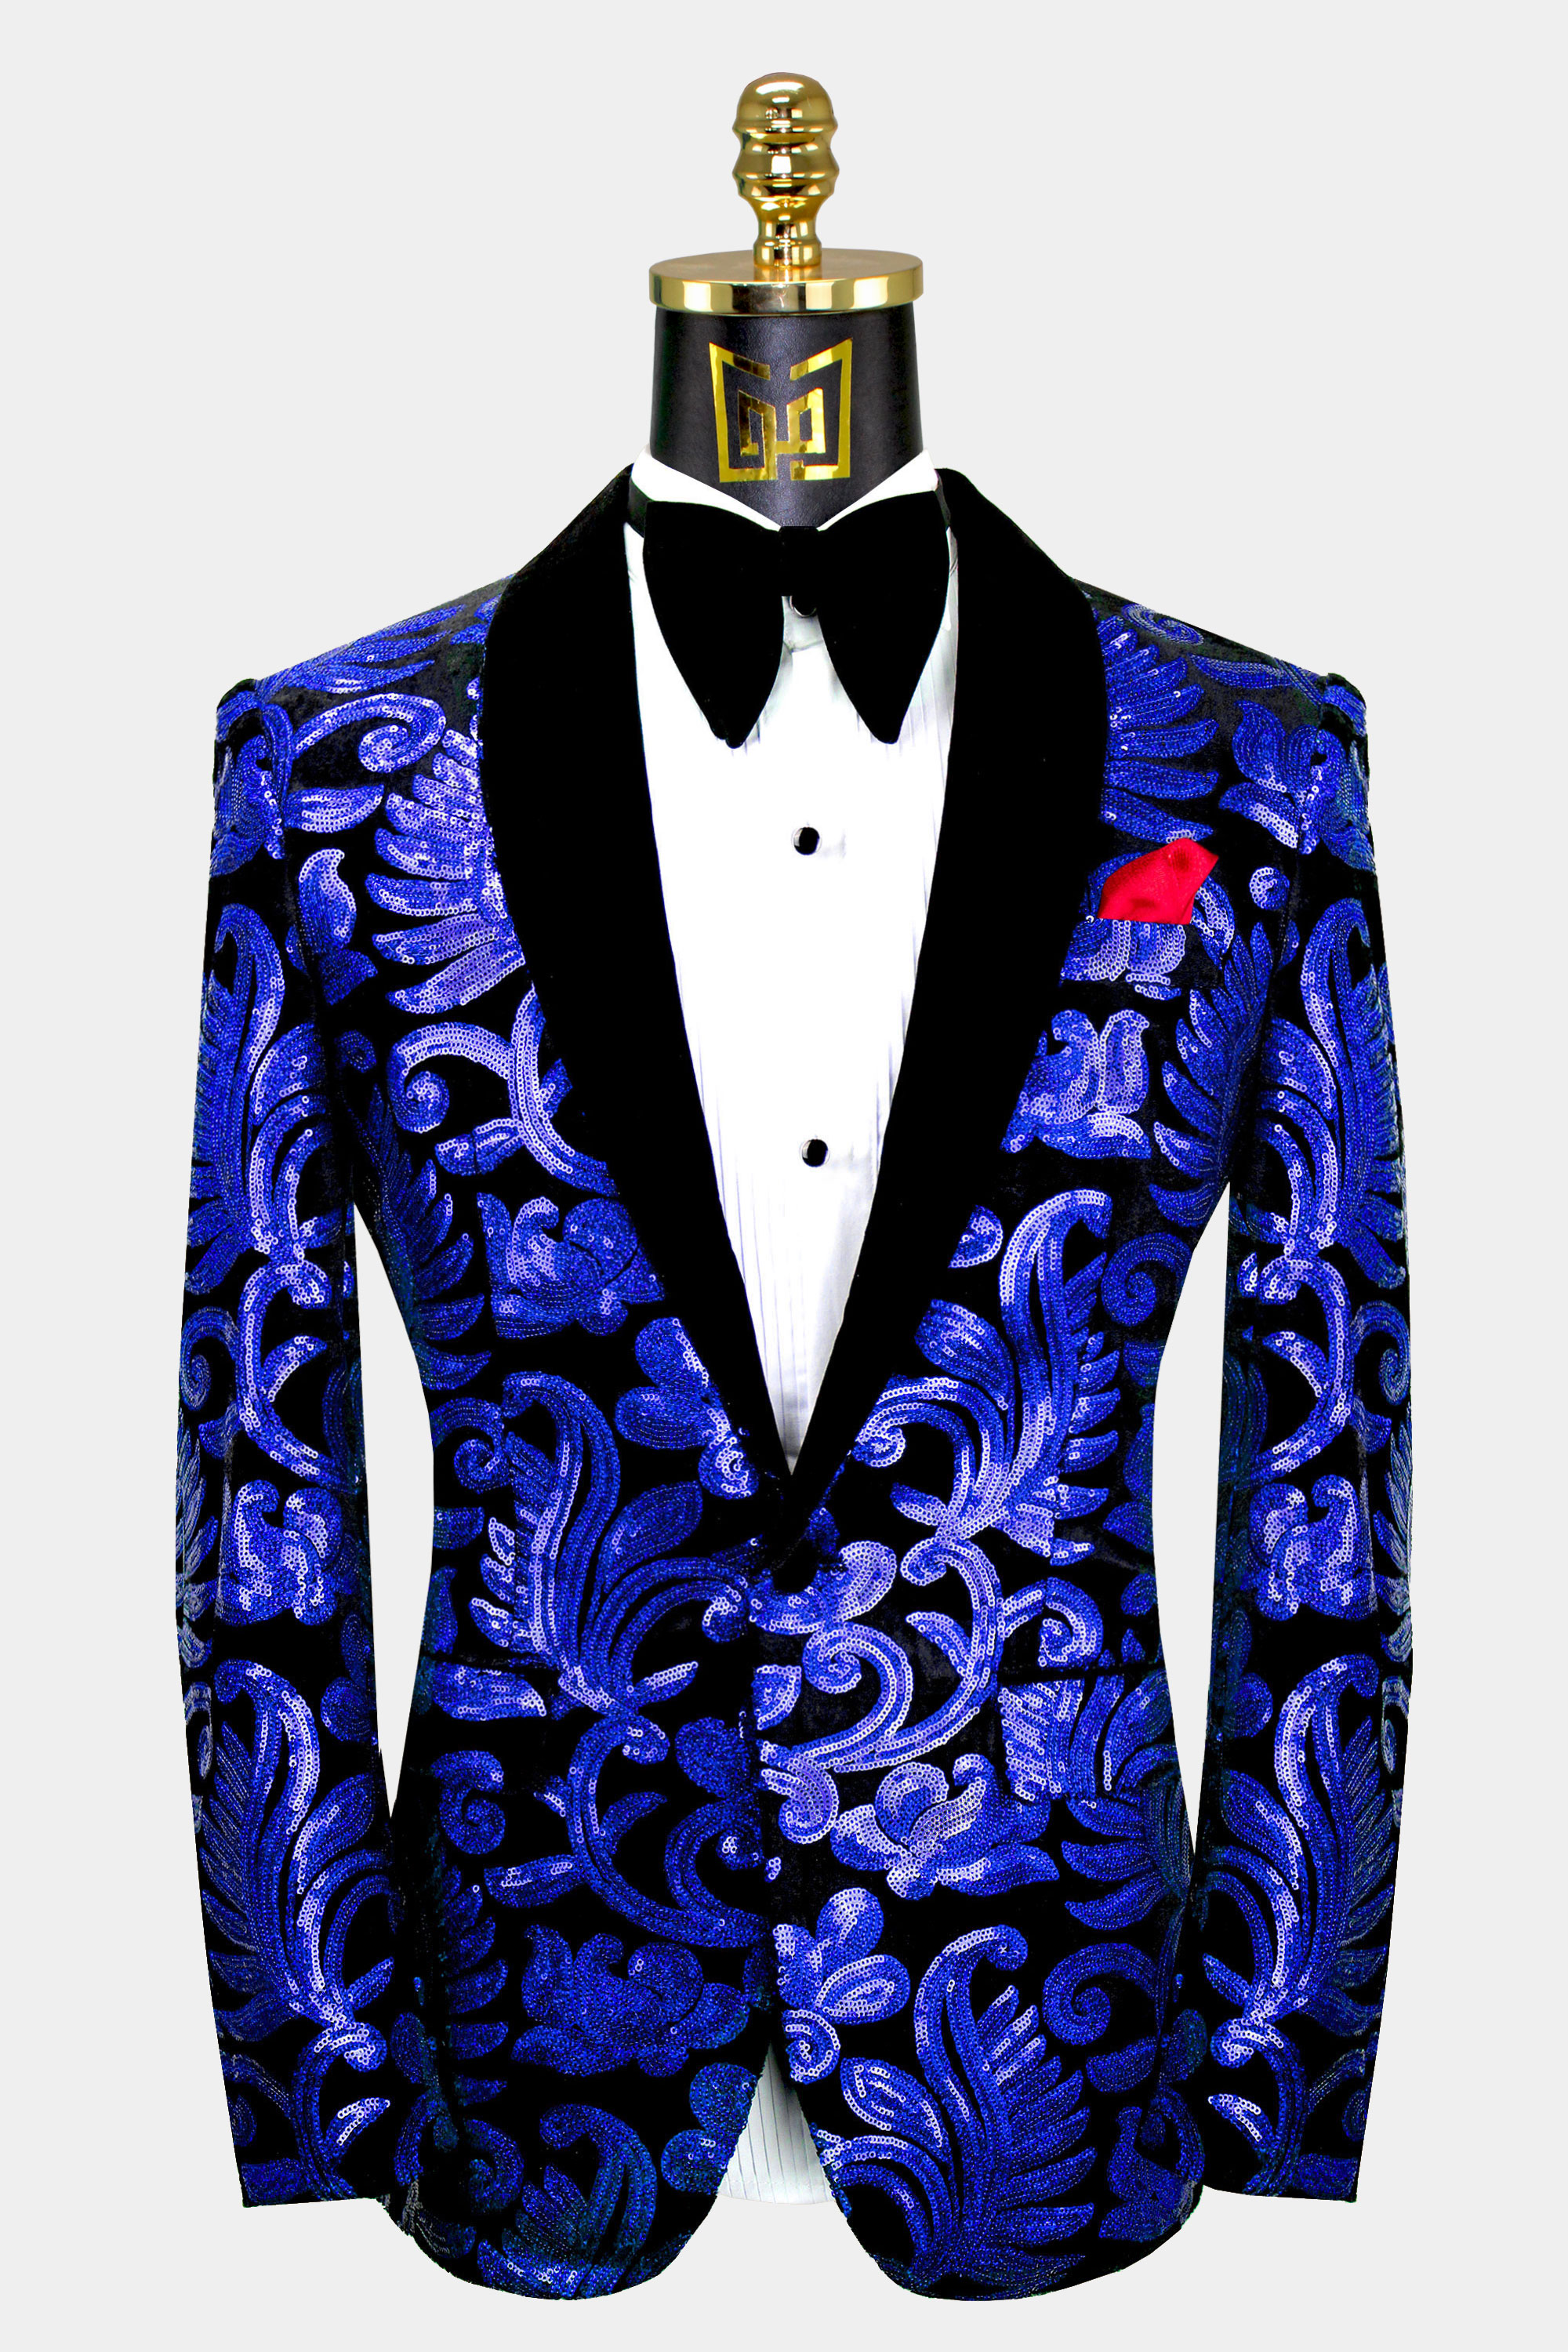 Royal Blue & Black Velvet Tuxedo Jacket with Sequins